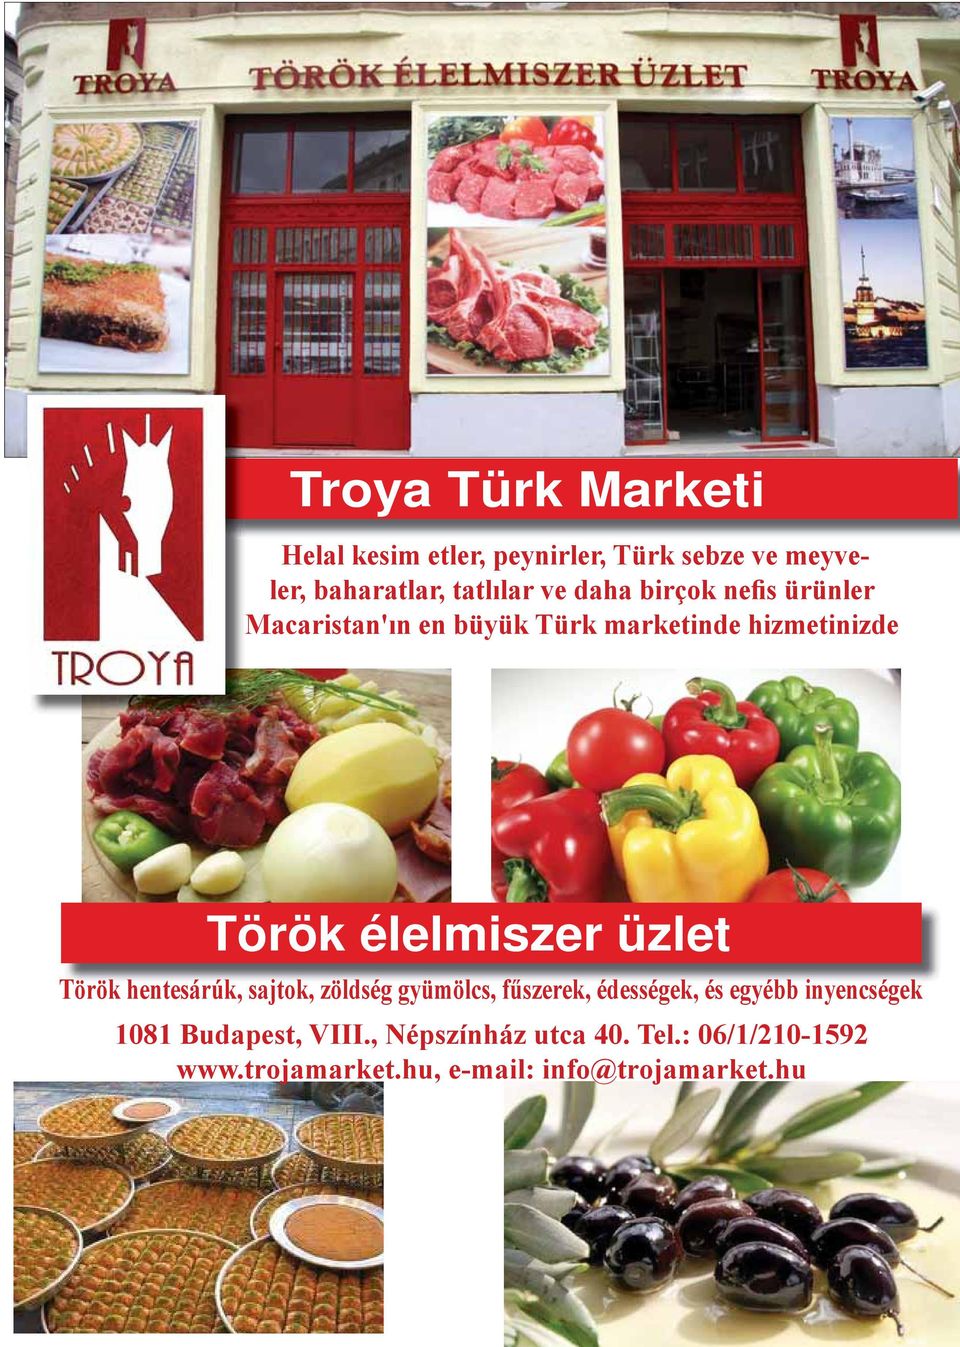 élelmiszer üzlet Török hentesárúk, sajtok, zöldség gyümölcs, fűszerek, édességek, és egyébb